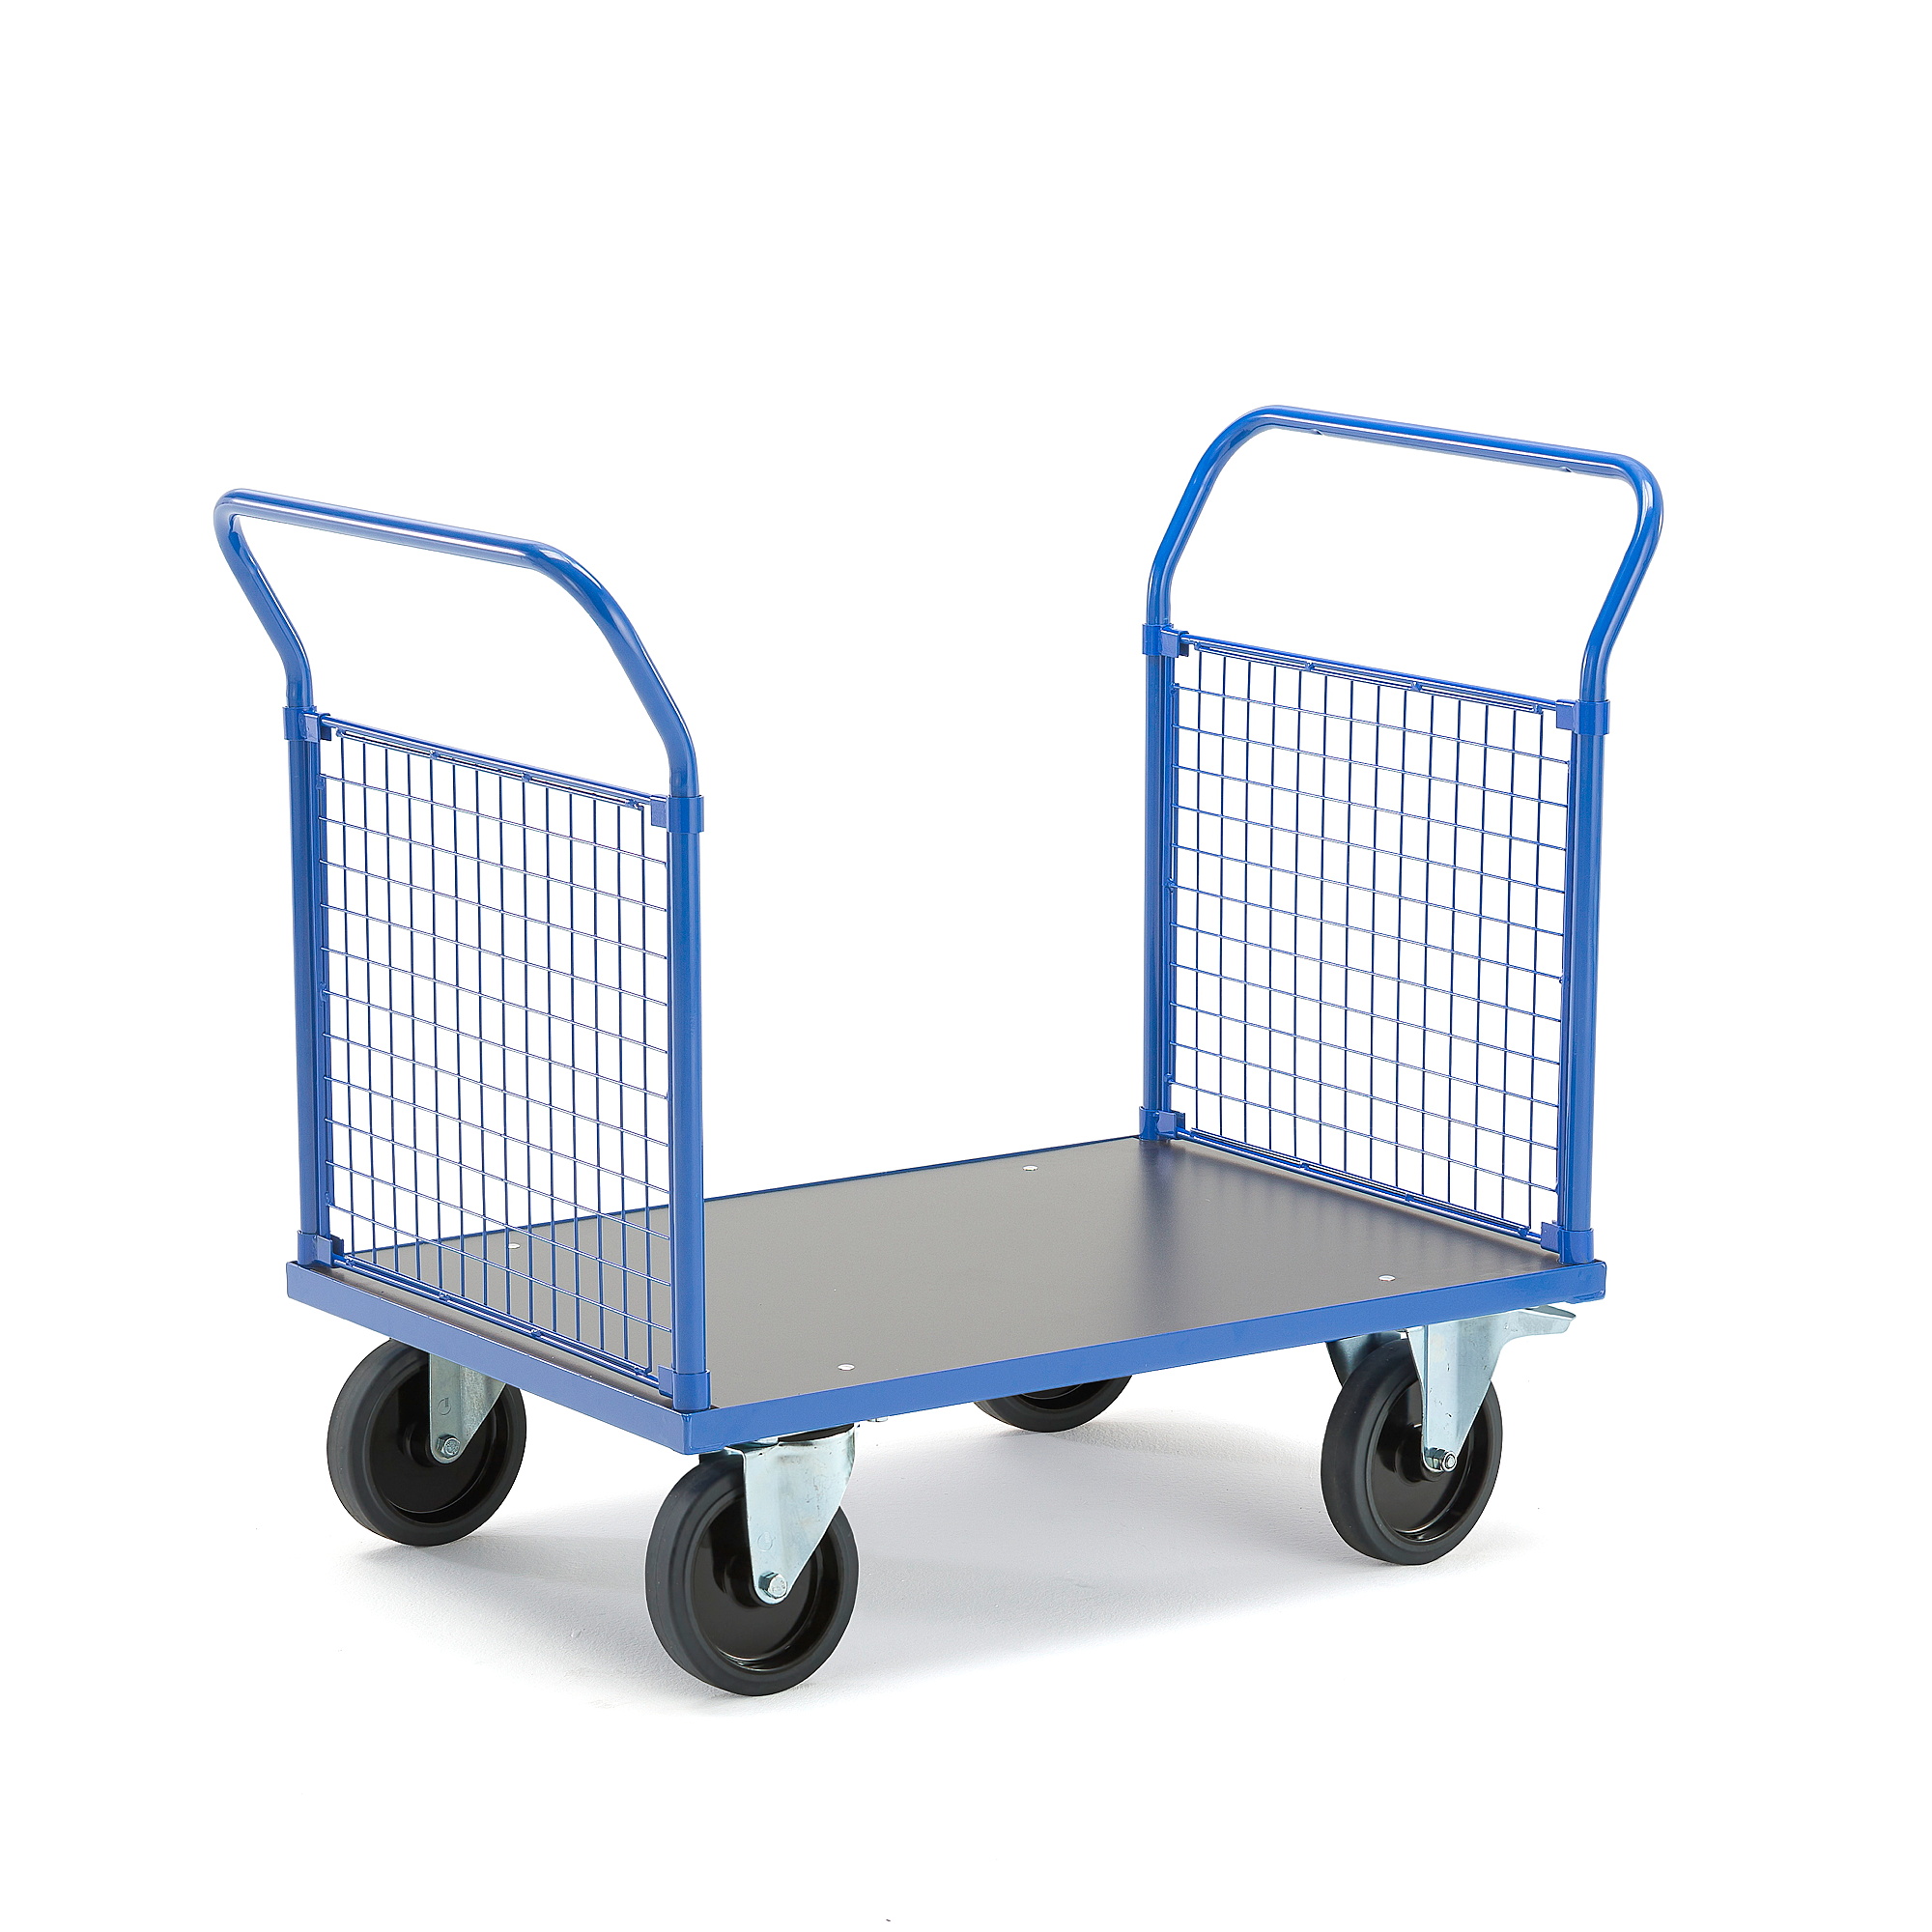 Plošinový vozík TRANSFER, 2 čelní drátěné stěny, 1000x700 mm, 1000 kg, elastická gumová kola, s brzd